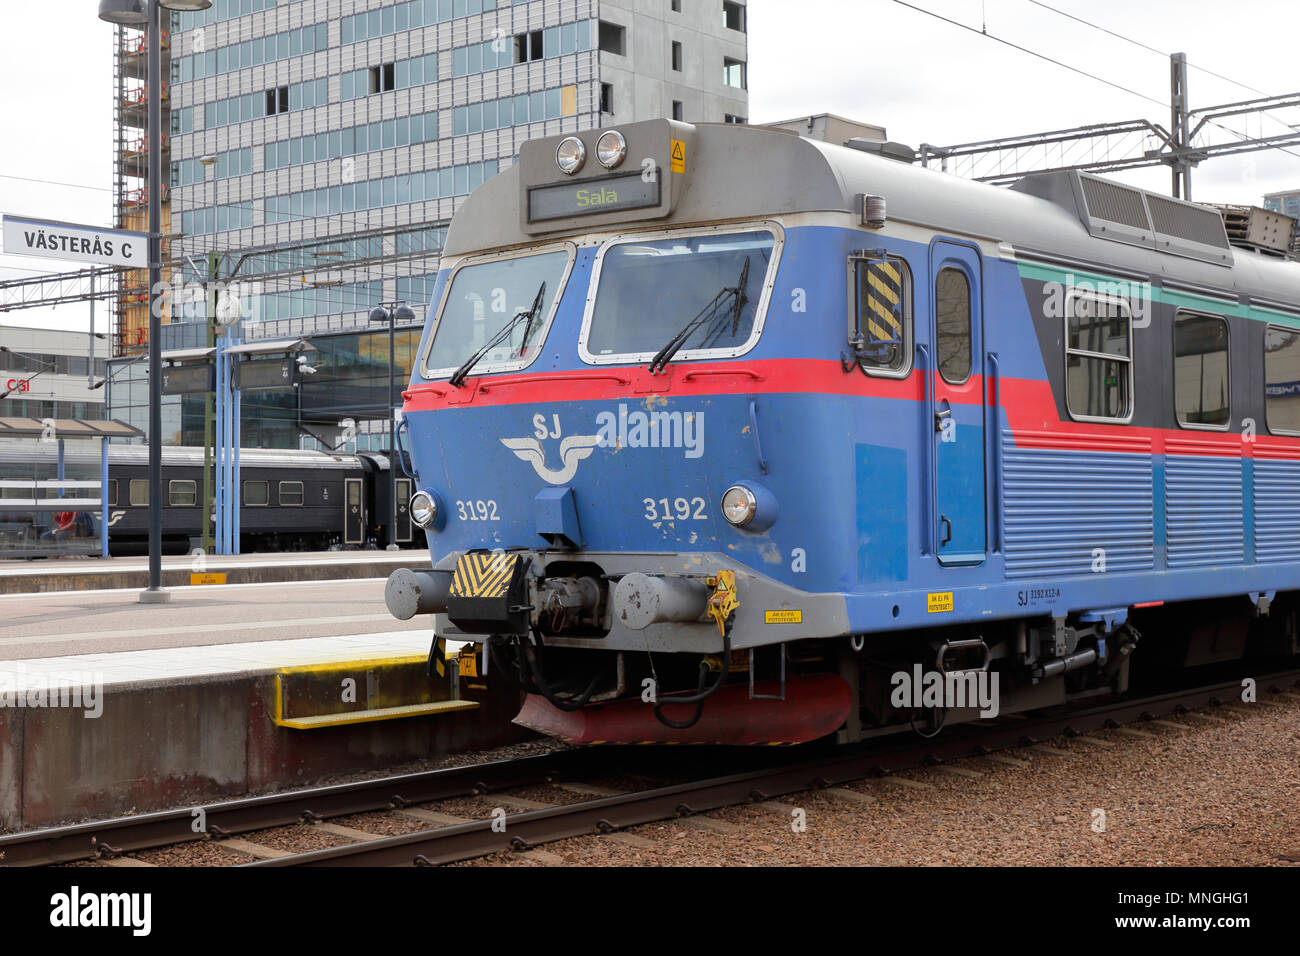 Vasteras, Schweden - 7. Mai 2017: Teilansicht einer Klasse X 10 blaue Elektrische multipel Einheit von SJ betrieben Rubrik für Sala am Bahnhof. Stockfoto